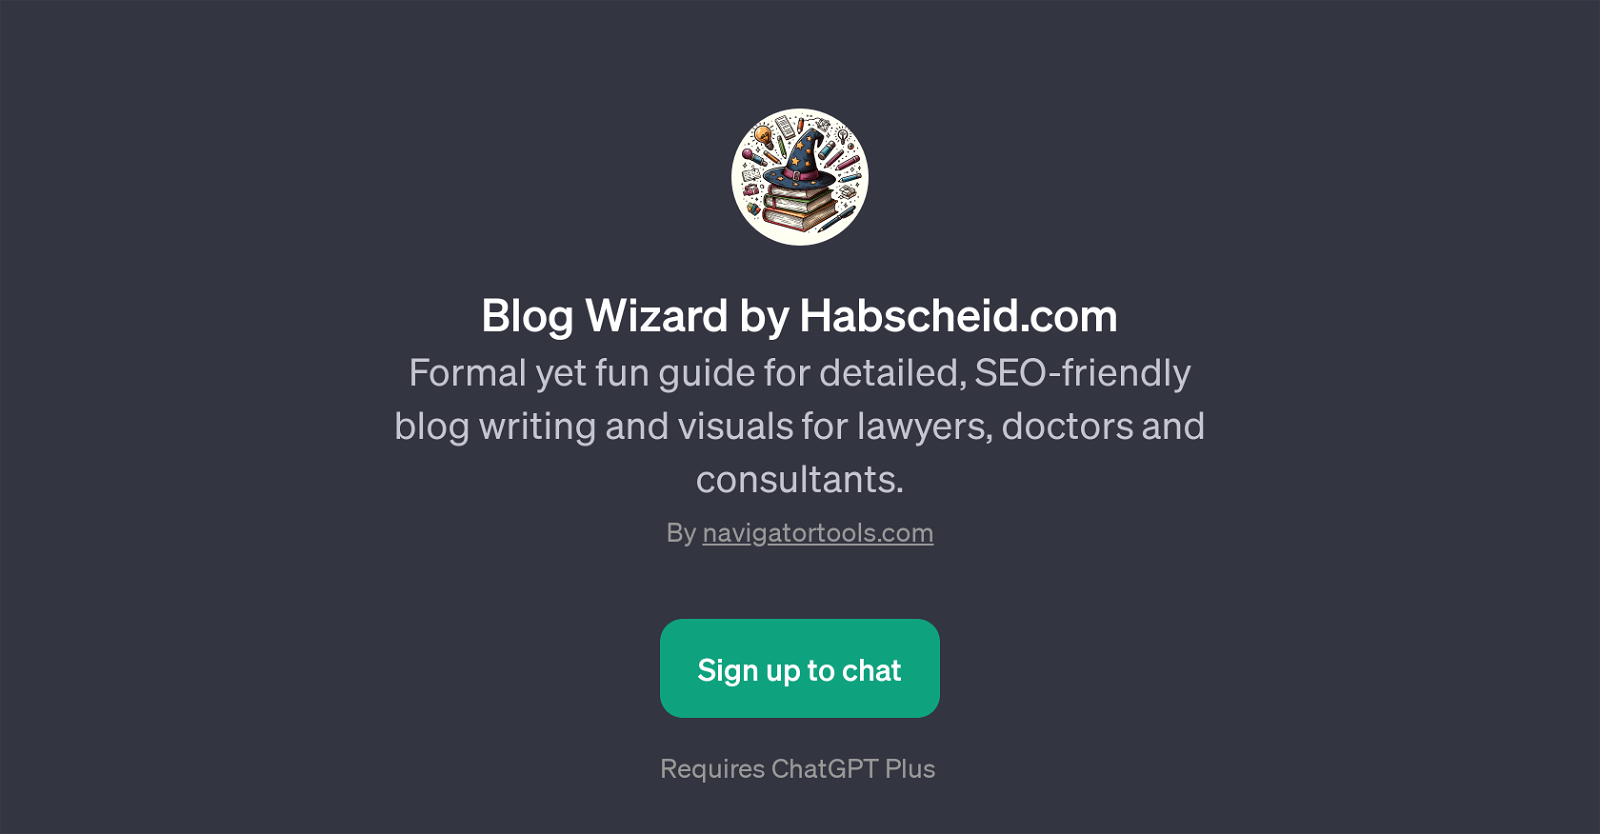 Blog Wizard by Habscheid.com website